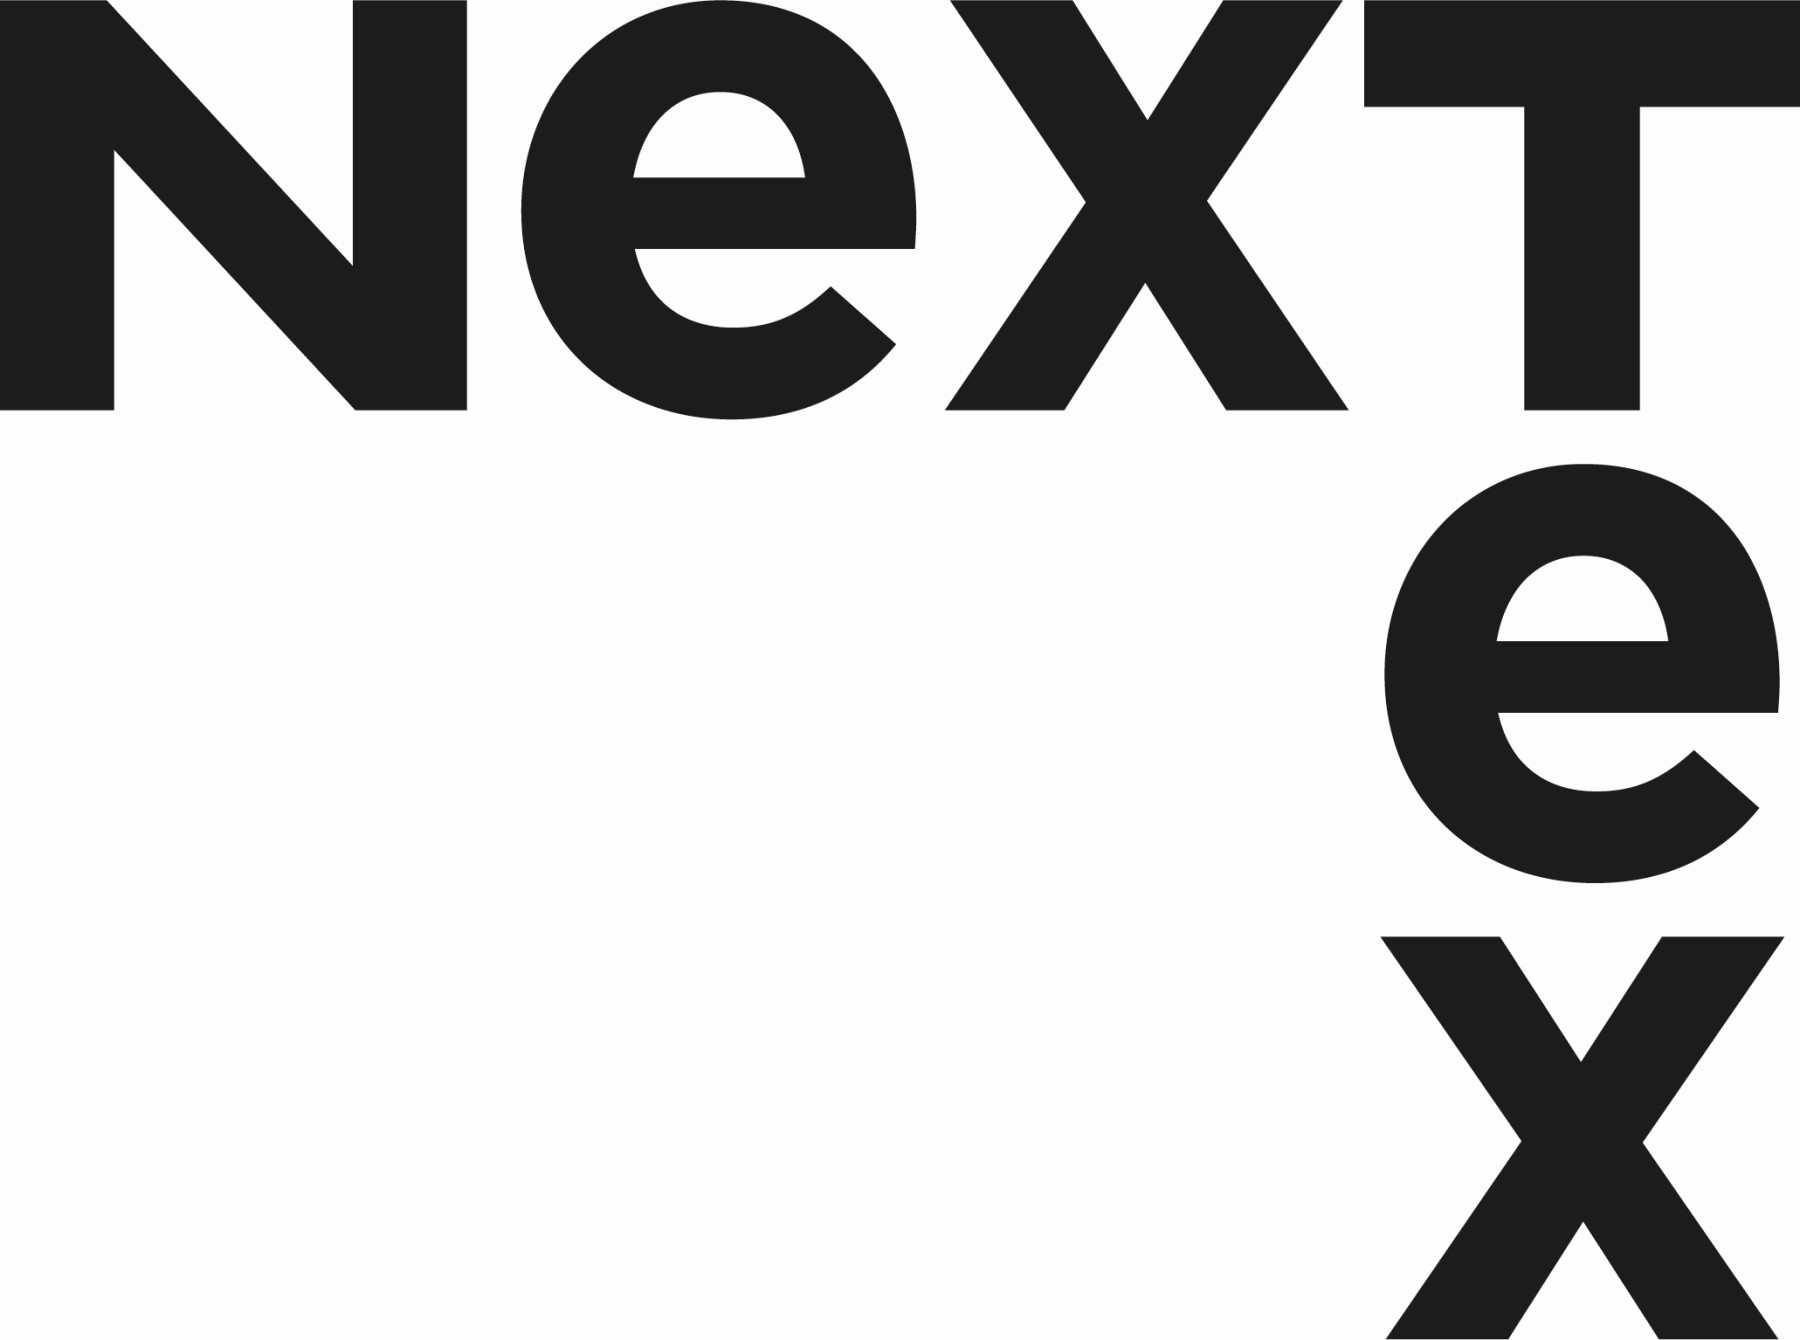 NexTex